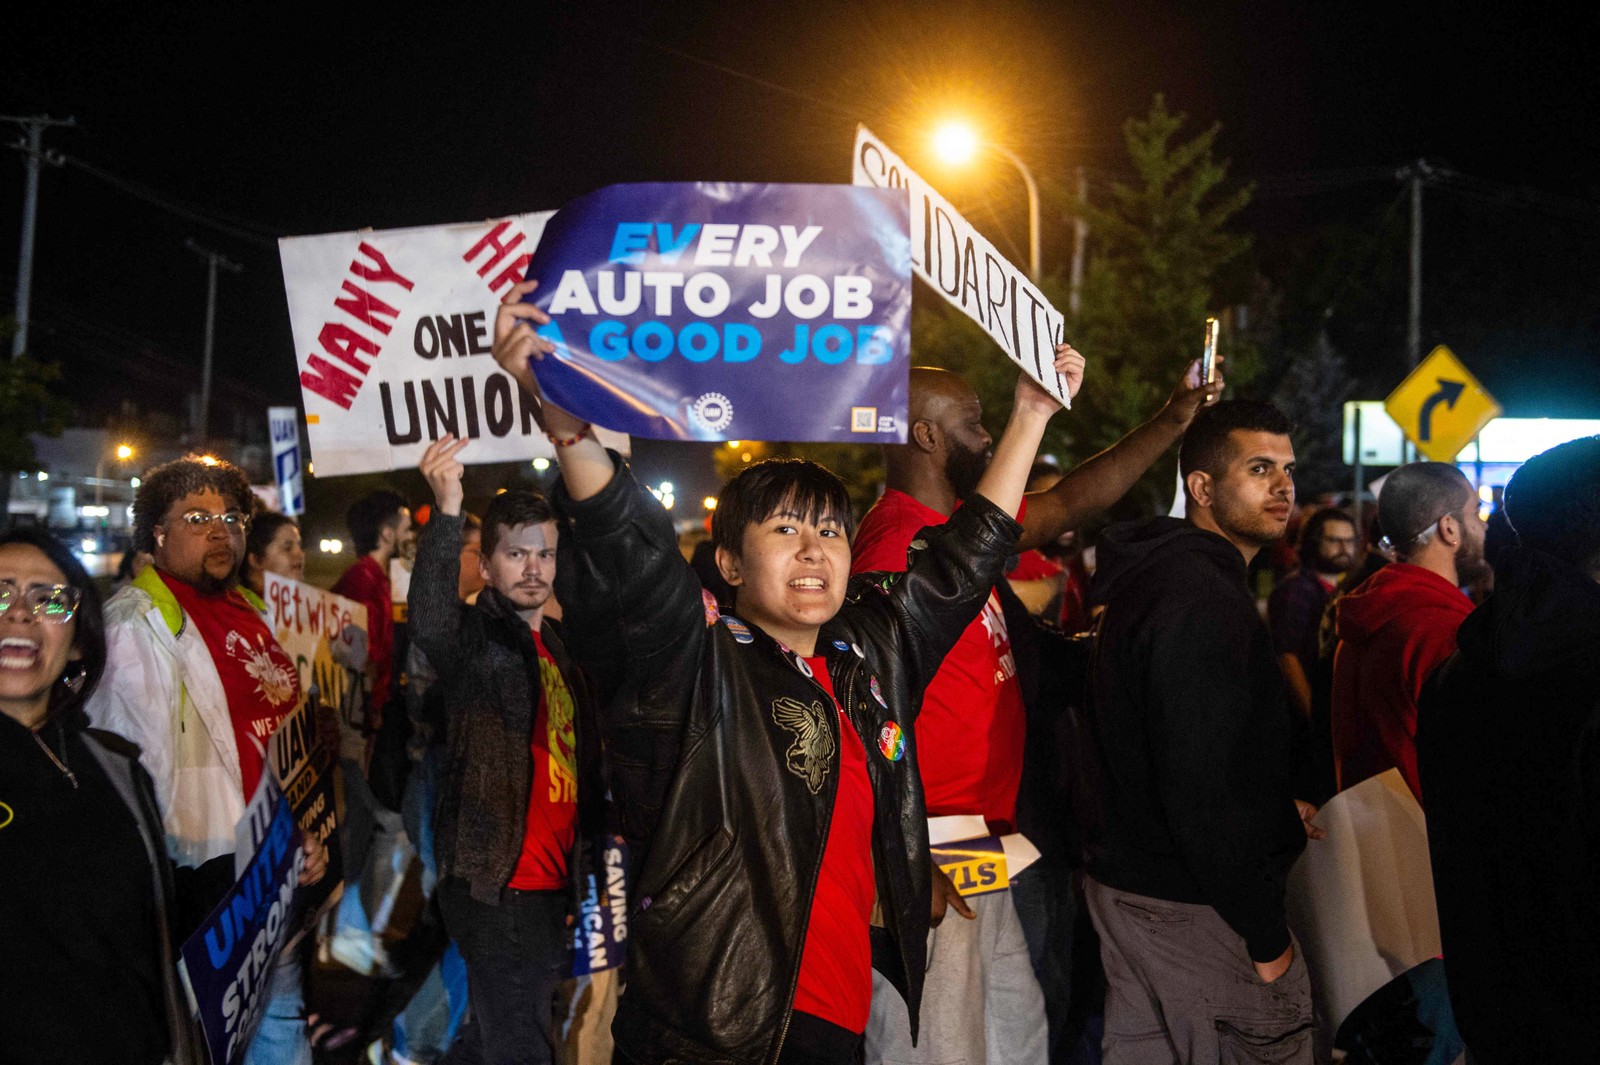 O sindicato dos trabalhadores automotivos dos EUA anunciou o início de uma greve em três fábricas da Ford, GM e Stellantis pouco depois da meia-noite de quinta-feira, quando expirou o prazo para chegar a um acordo com os empregadores sobre um novo contrato. — Foto: Matthew Hatcher/AFP